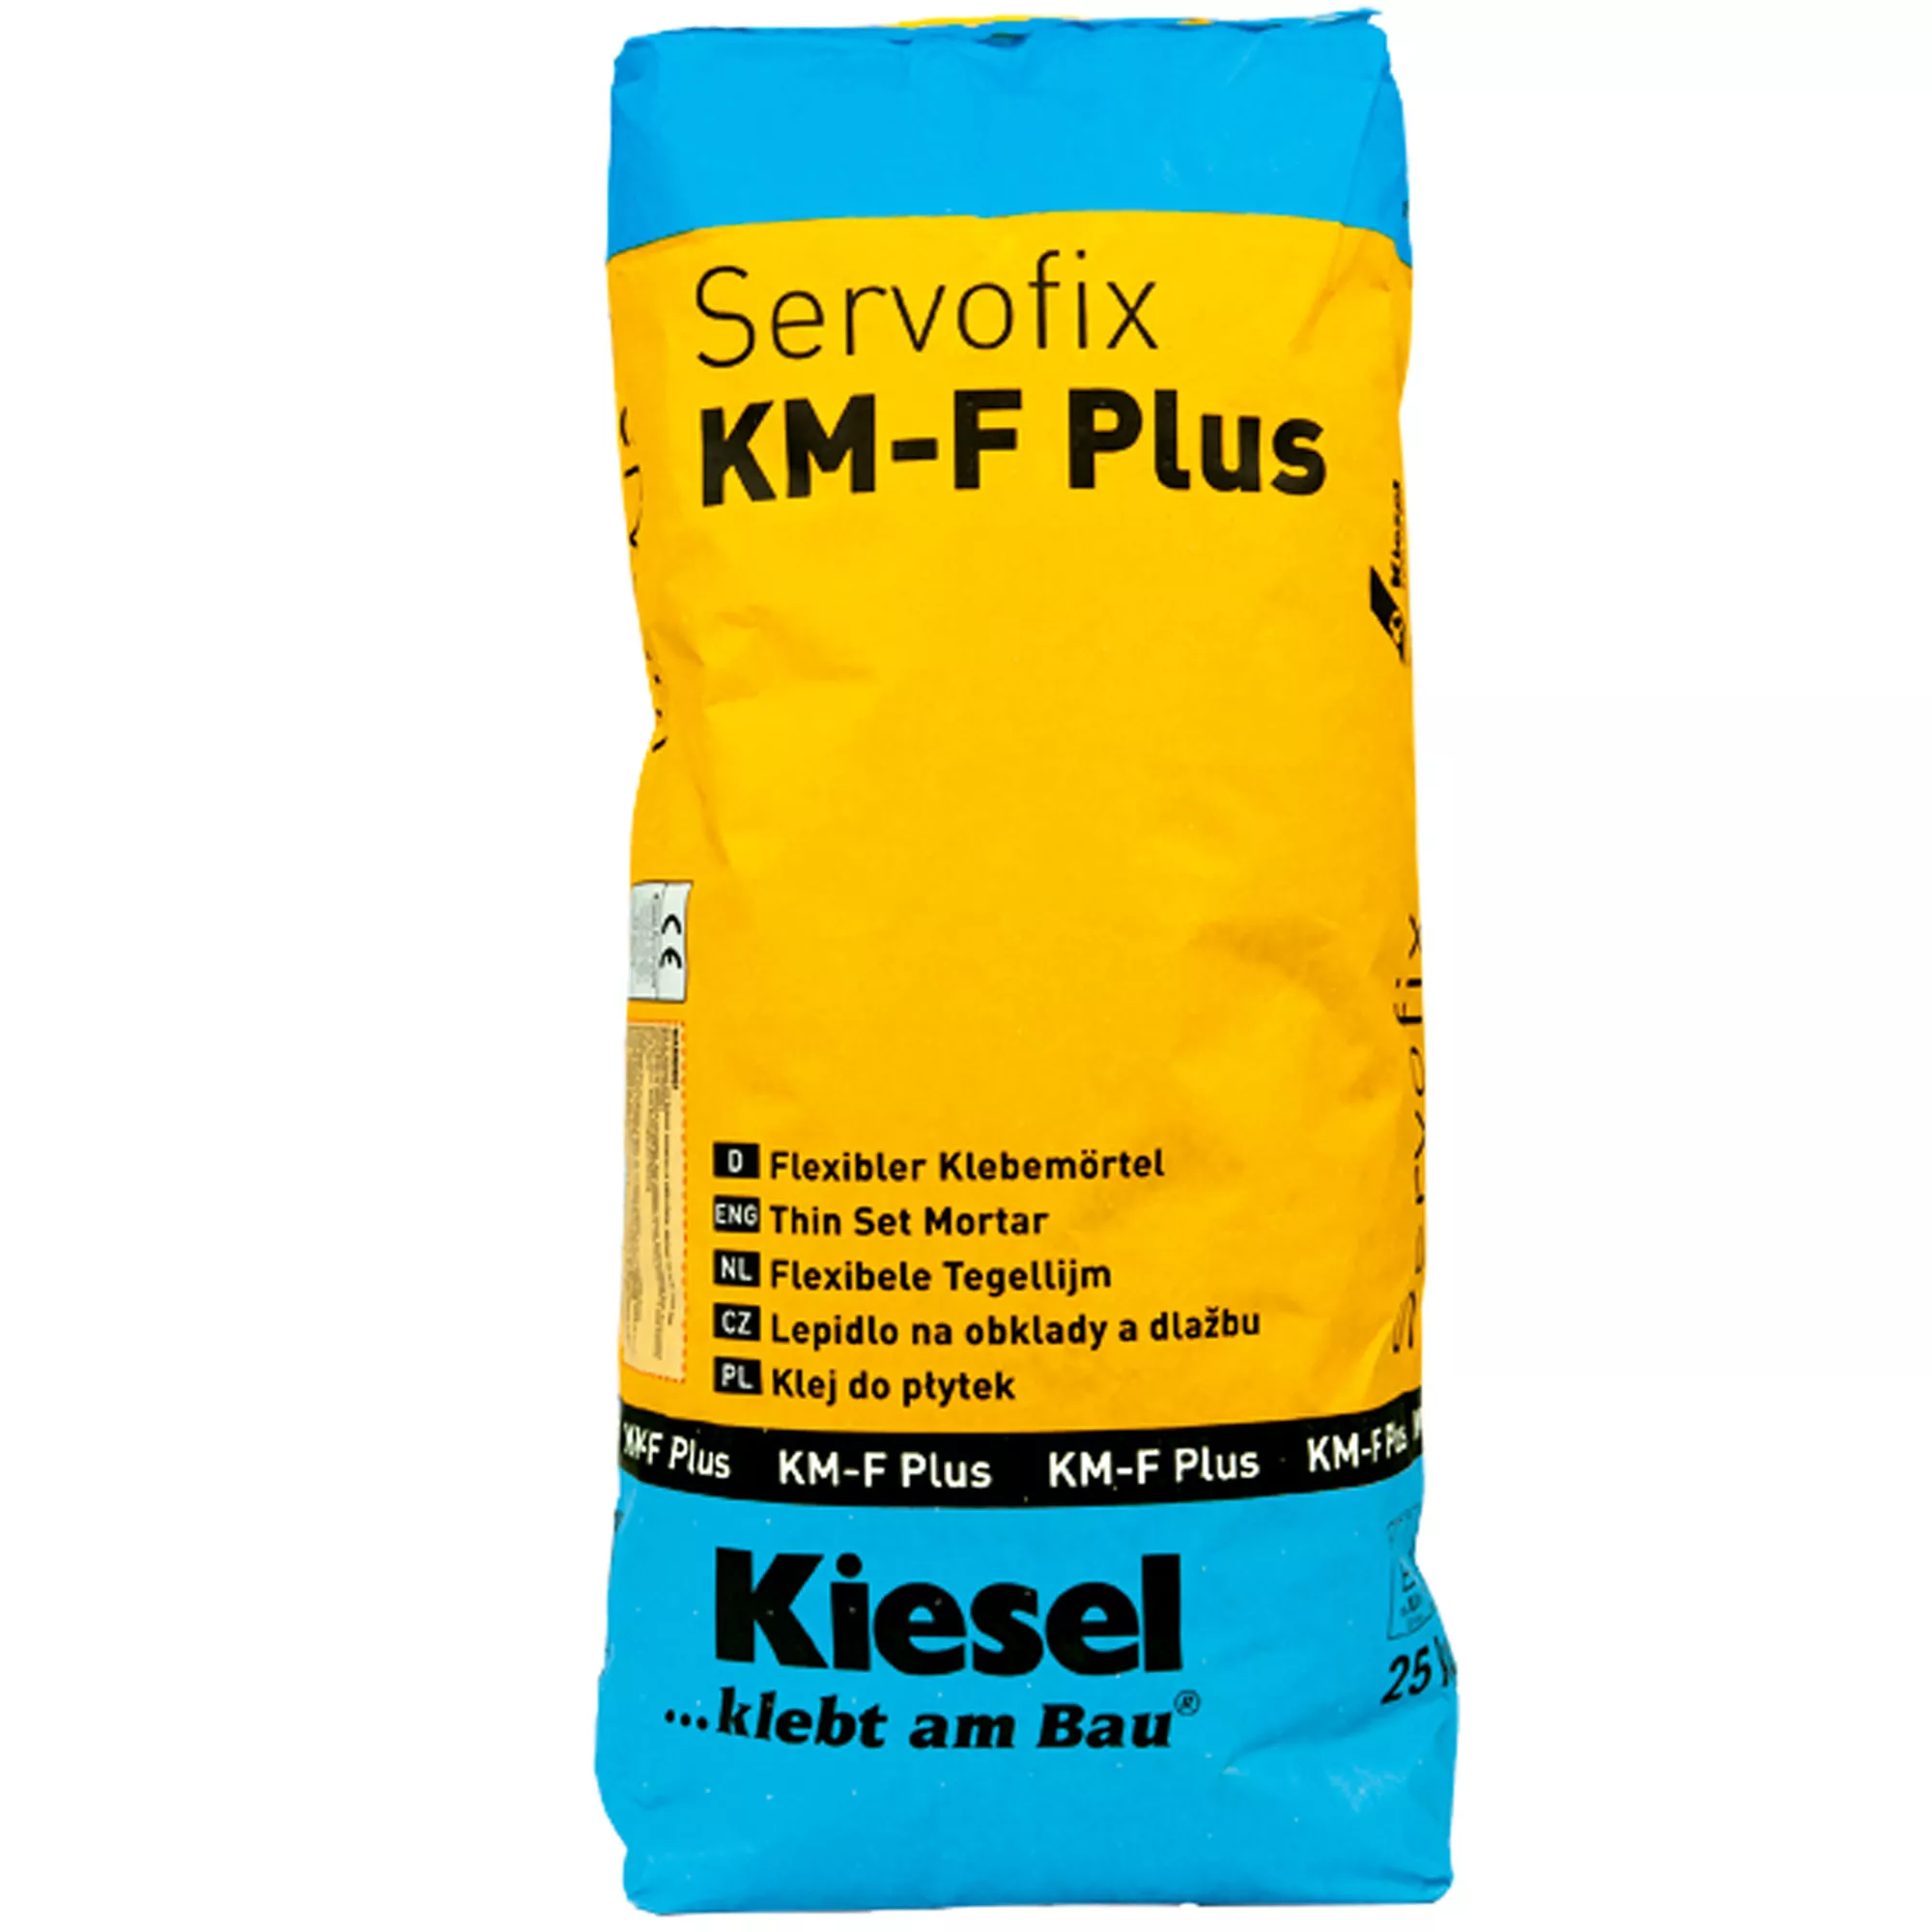 Kiesel flislim Servofix KM-F Plus - fleksibel limmørtel 25 kg